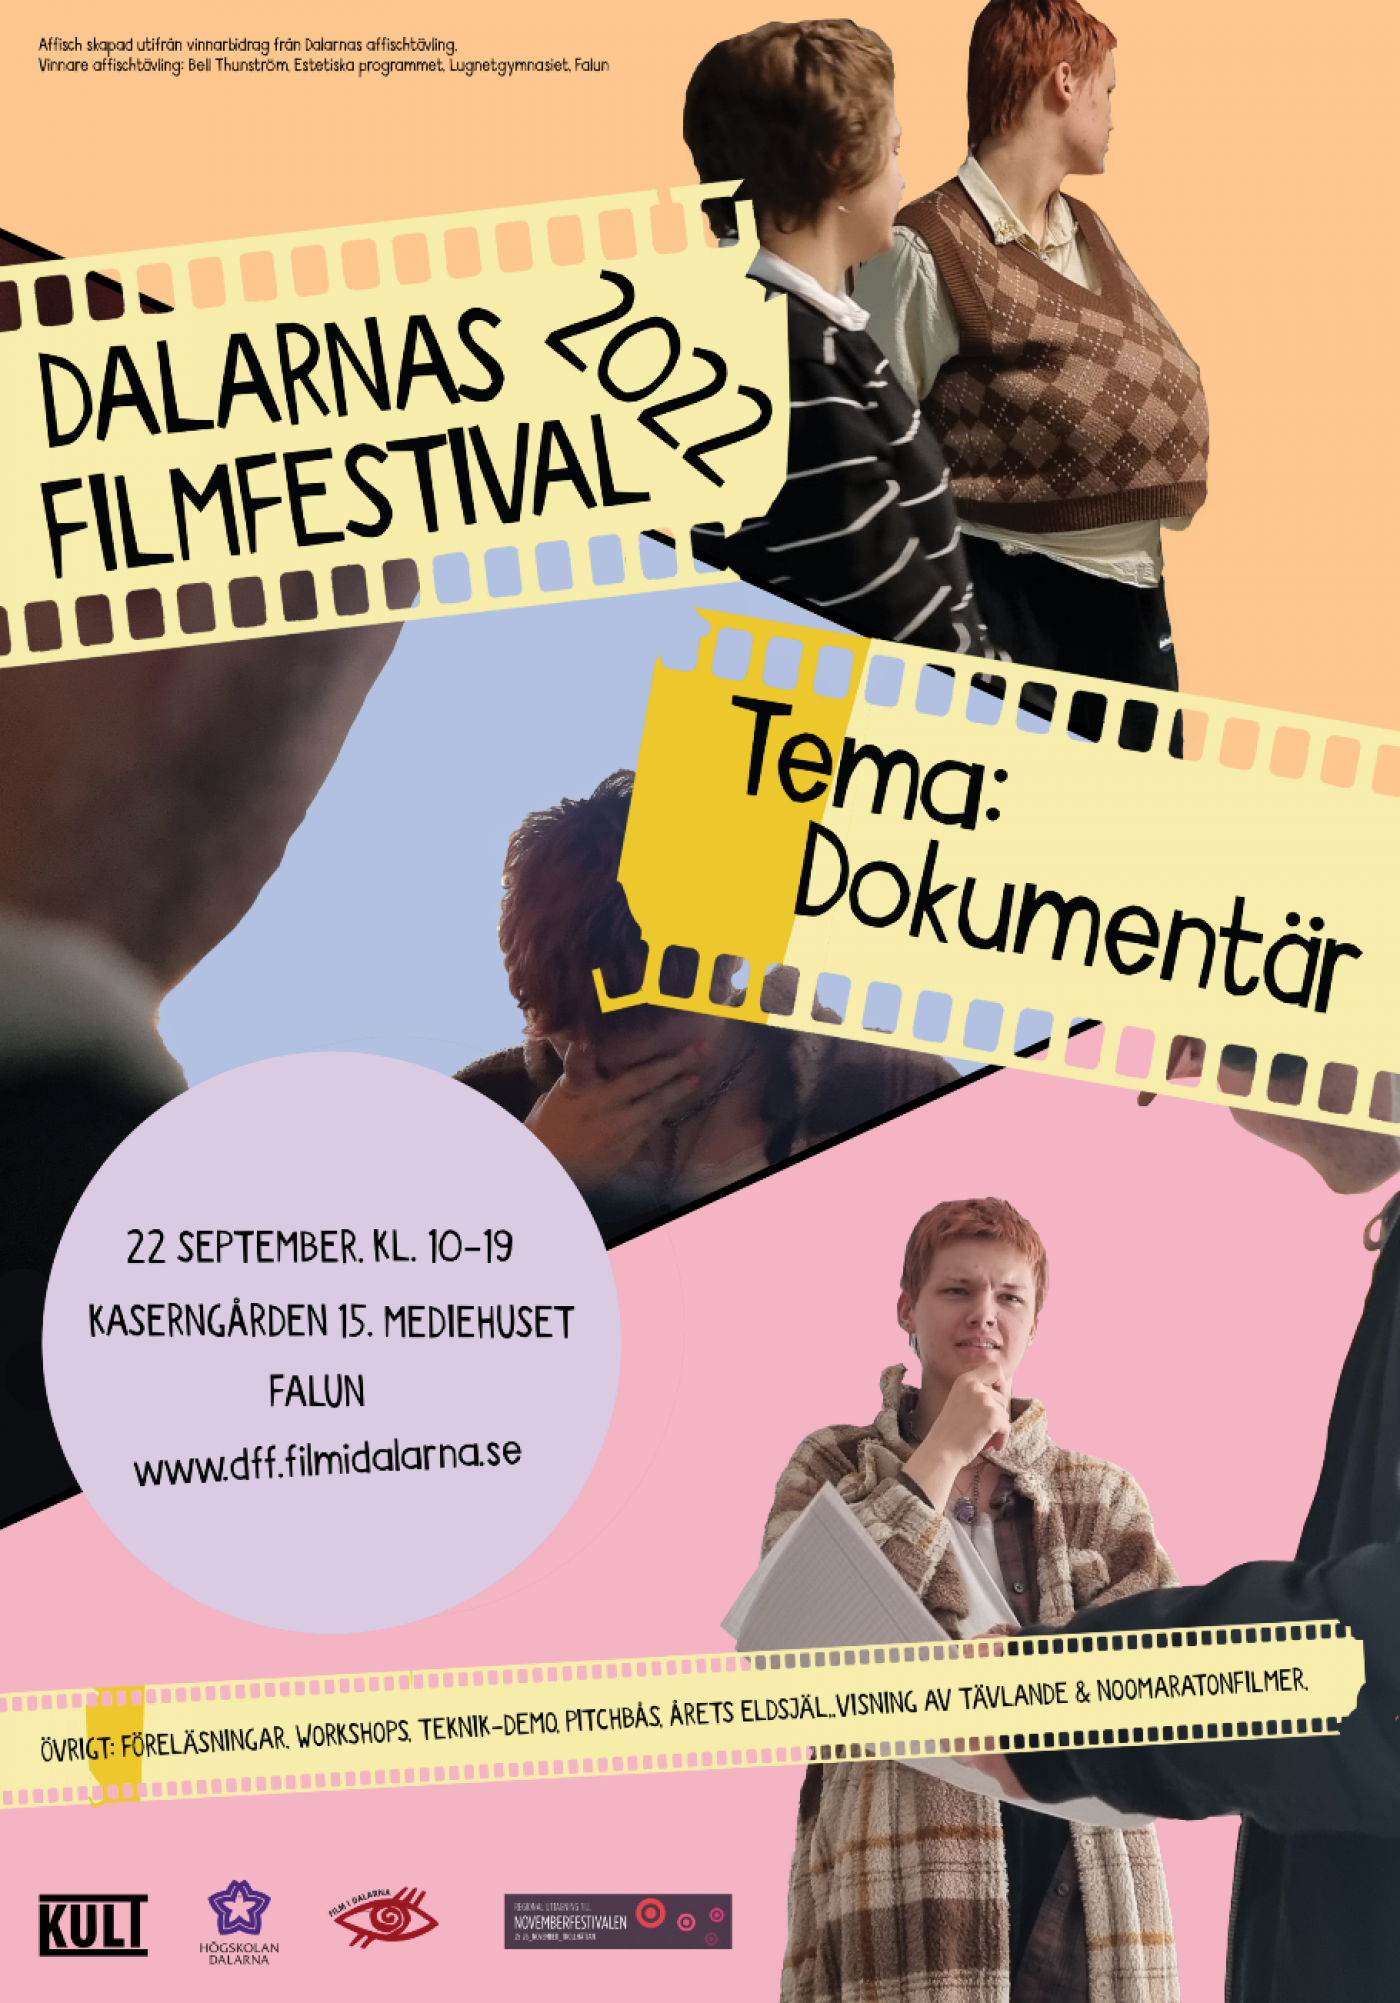 Affisch för dalarnas filmfestival visande en flicka och en projektor.